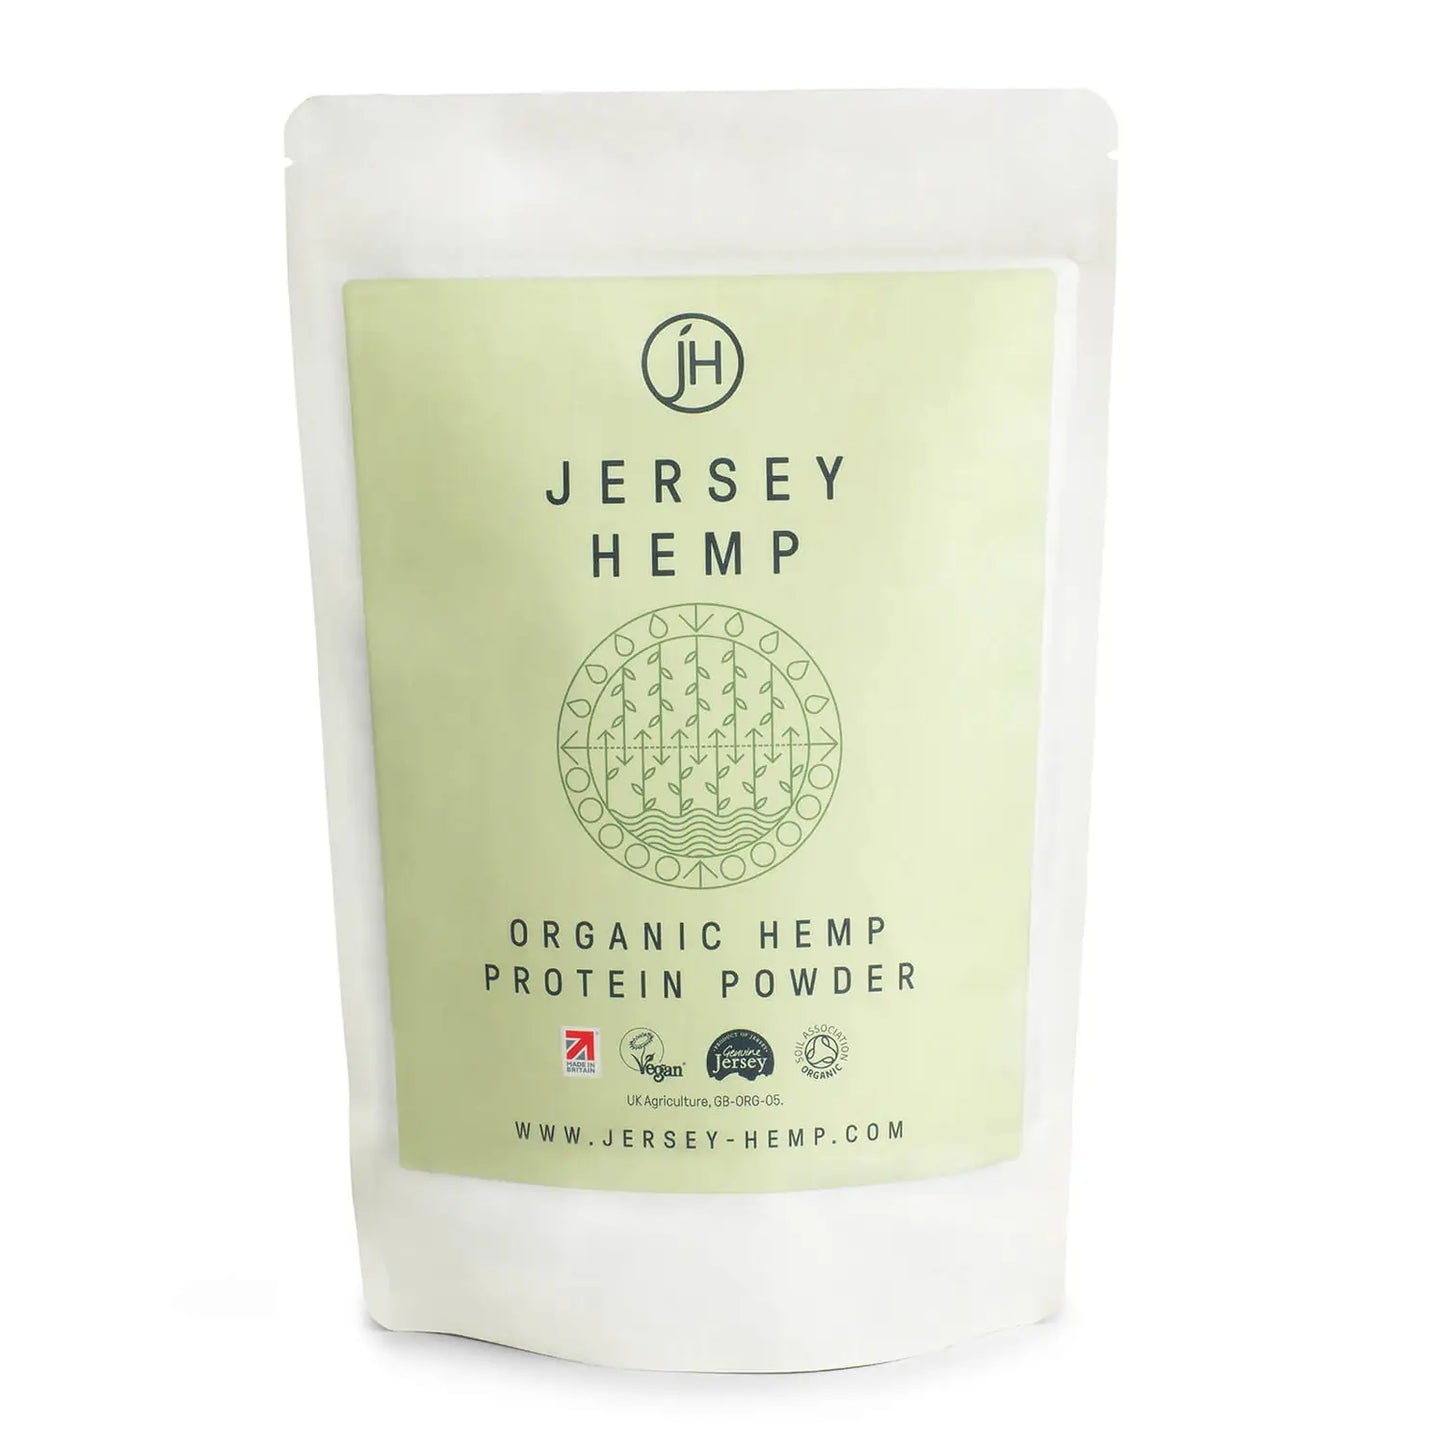 Jersey Hemp - Organic Hemp Protein Powder - 500g Bag